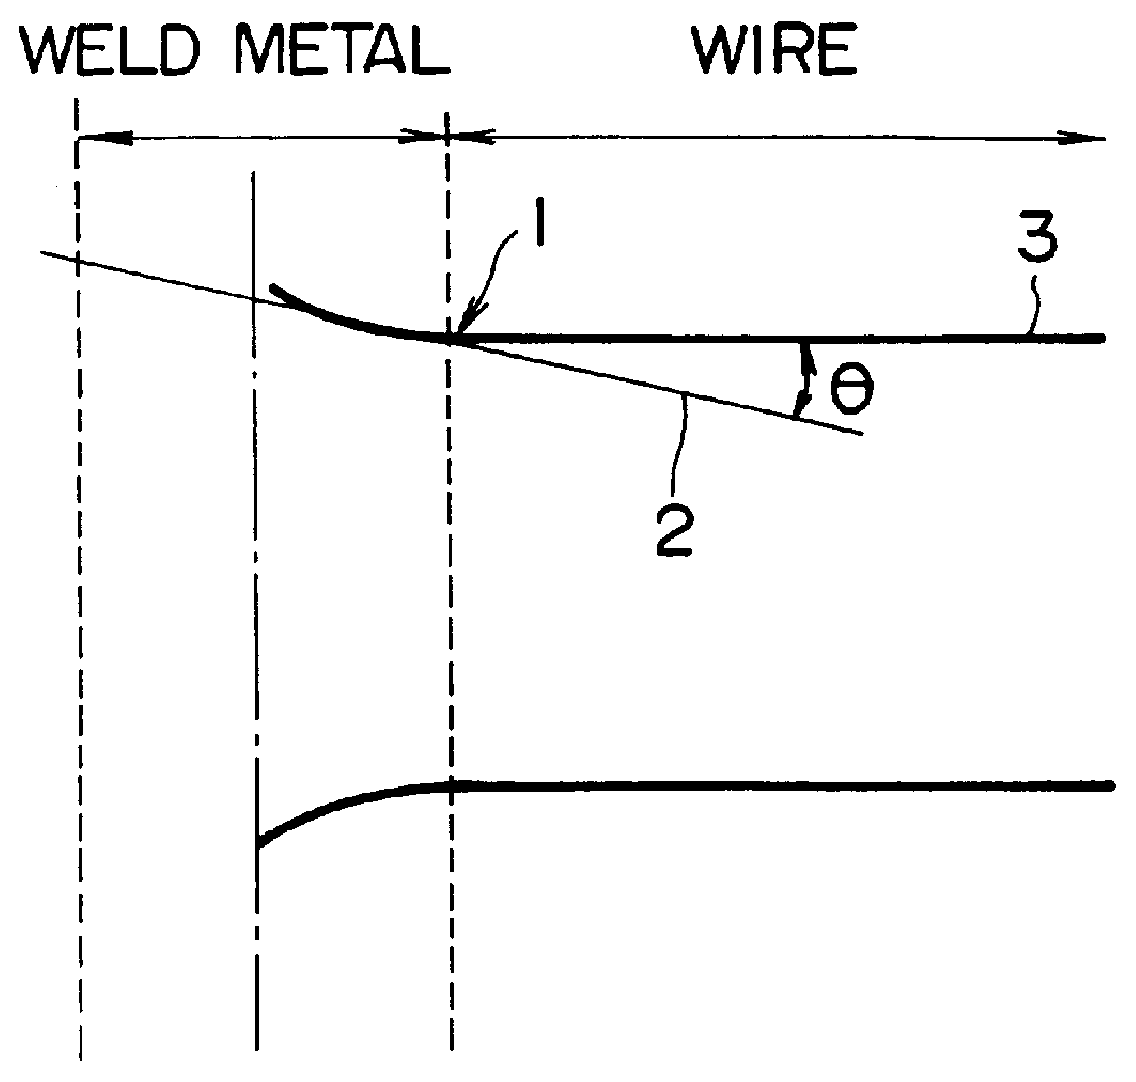 Welding wire